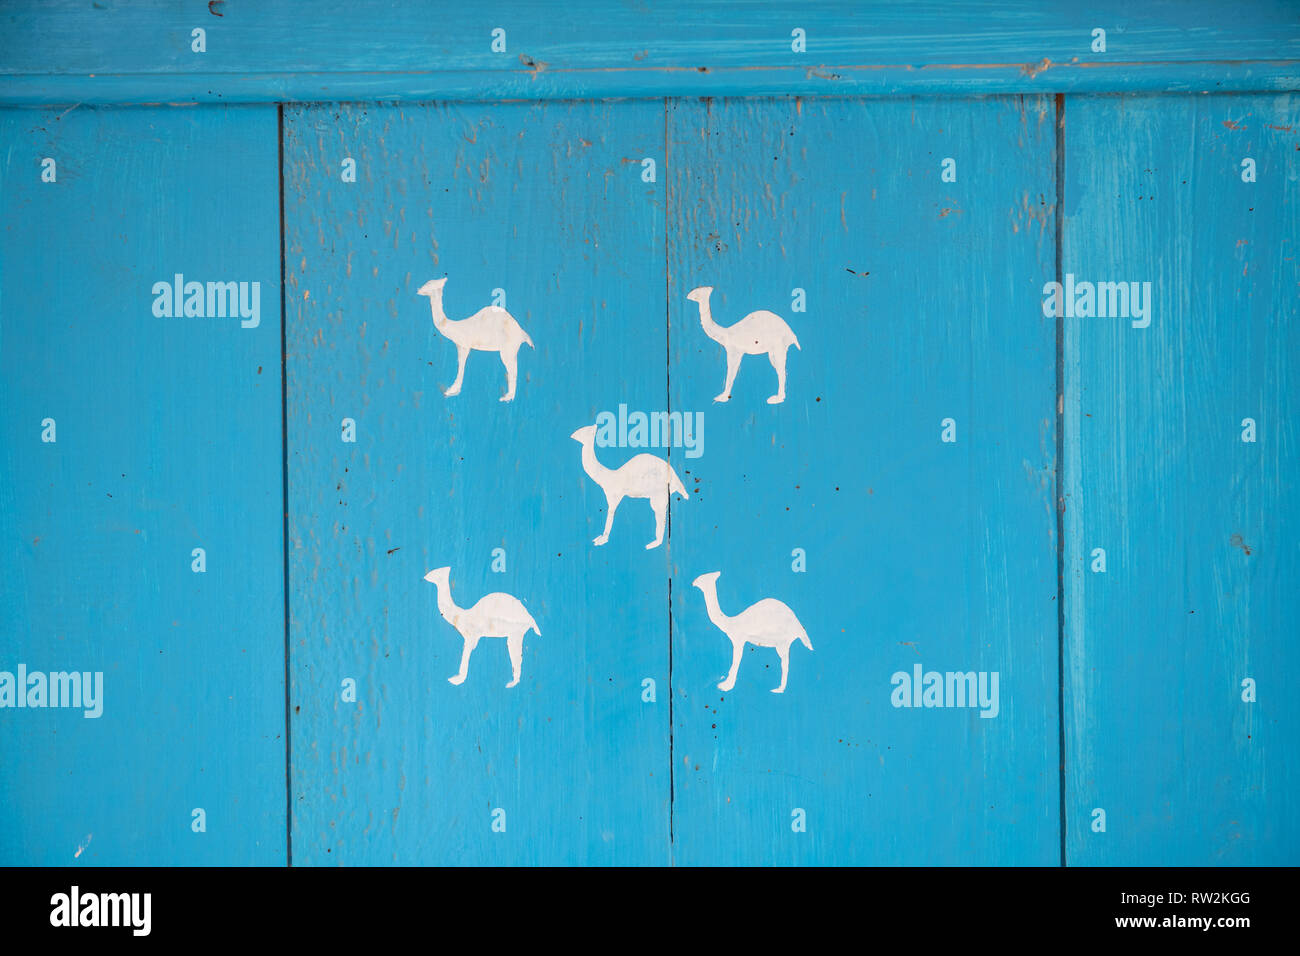 Les représentations de chameaux blancs peints en bleu vif sur la porte peinte, Oasis Tighmert, Maroc Banque D'Images